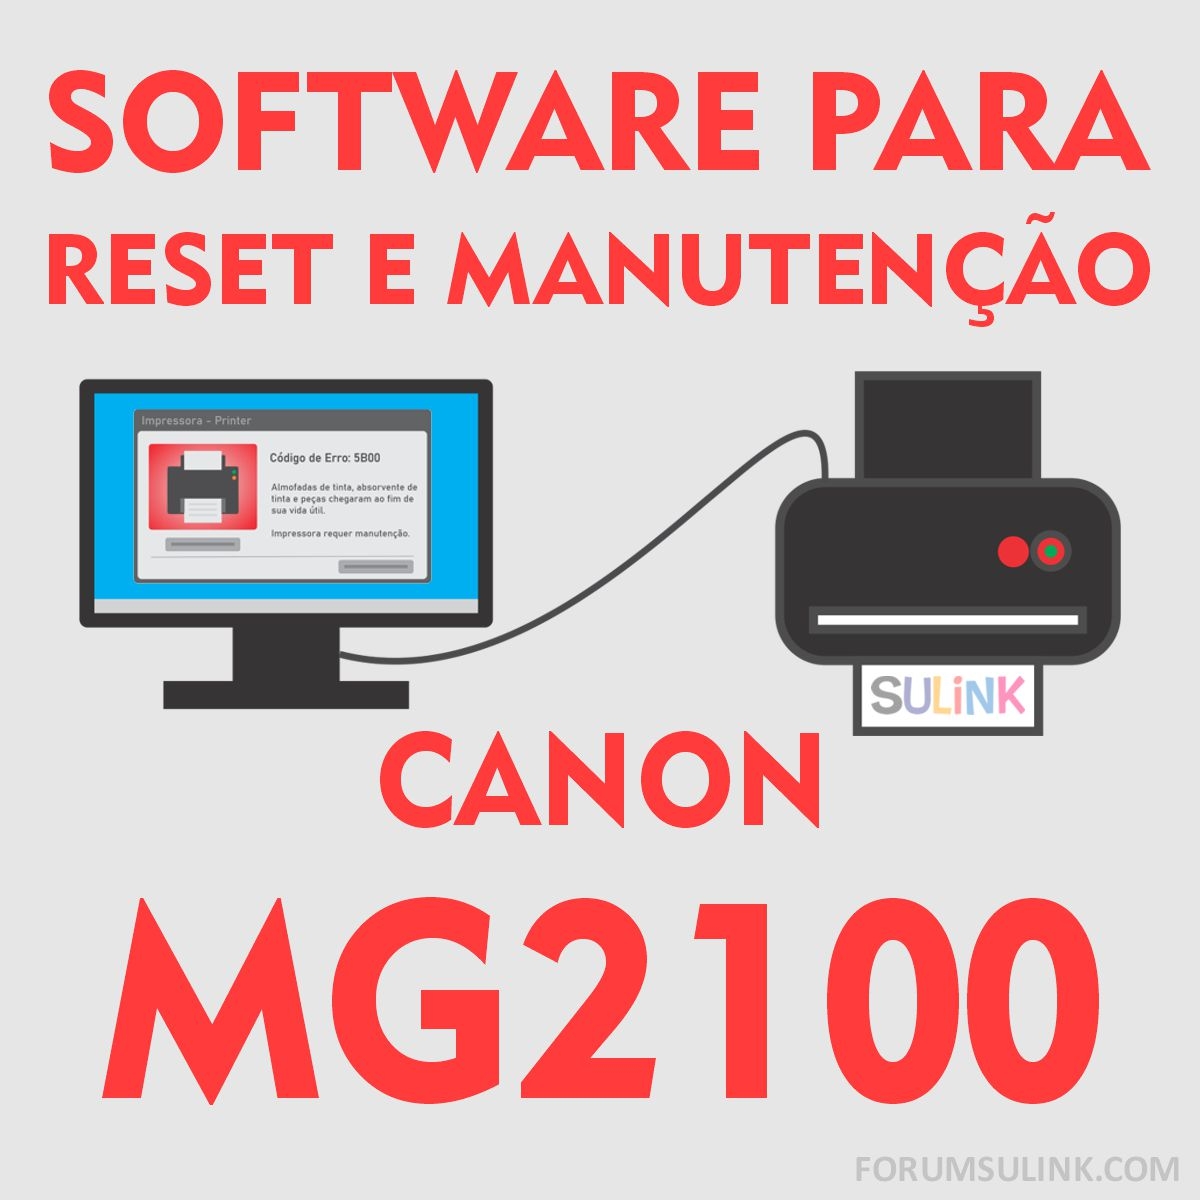 Canon MG2100 | Software para Reset das Almofadas e Manutenção